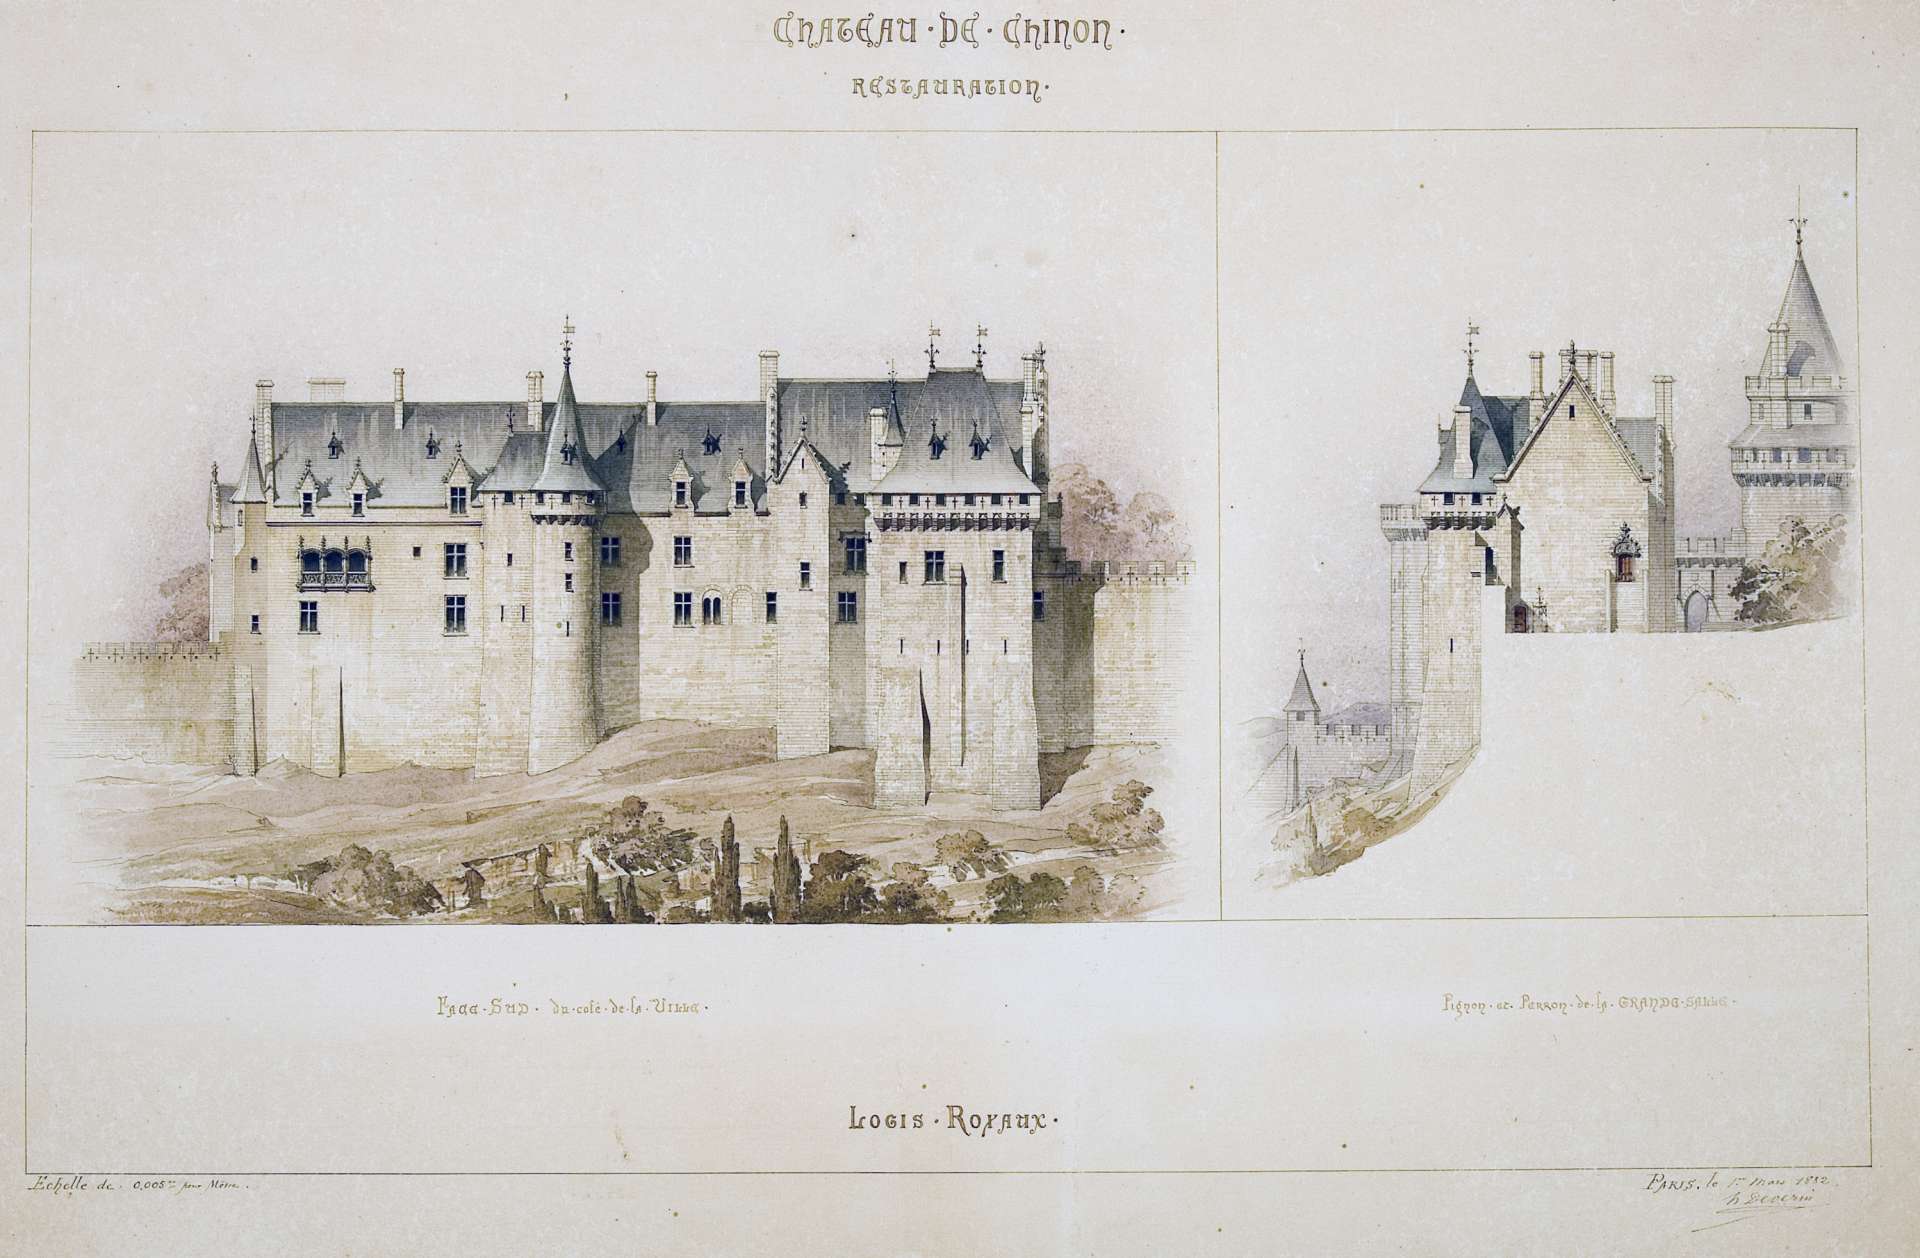 Projet de restauration des logis royaux par l’architecte en chef des Monuments historiques Henri Déverin en 1882, non réalisé